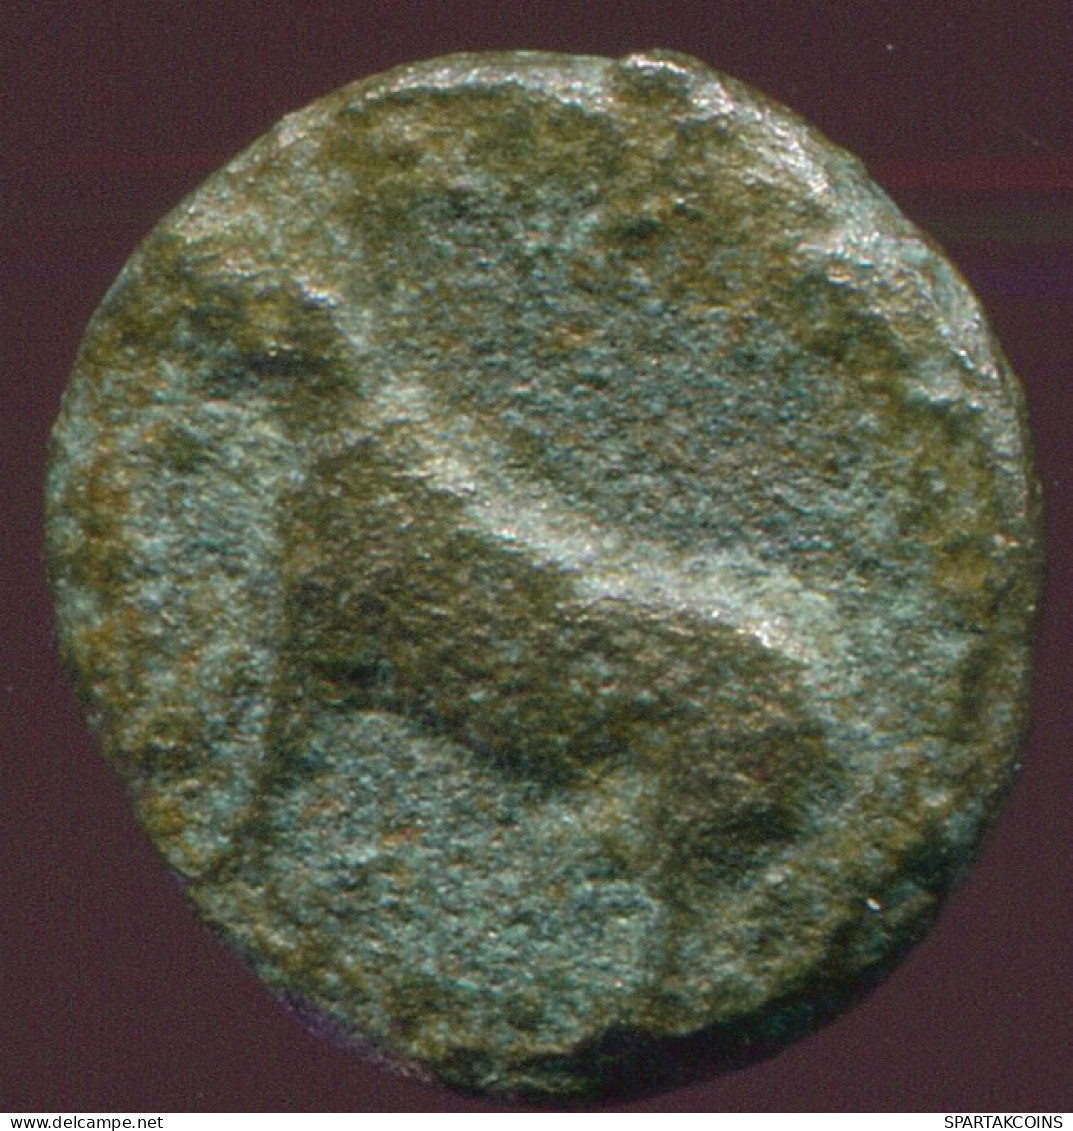 ATHENA Authentic Ancient GRIECHISCHE Münze 1.1g/9.8mm #GRK1352.10.D.A - Grecques